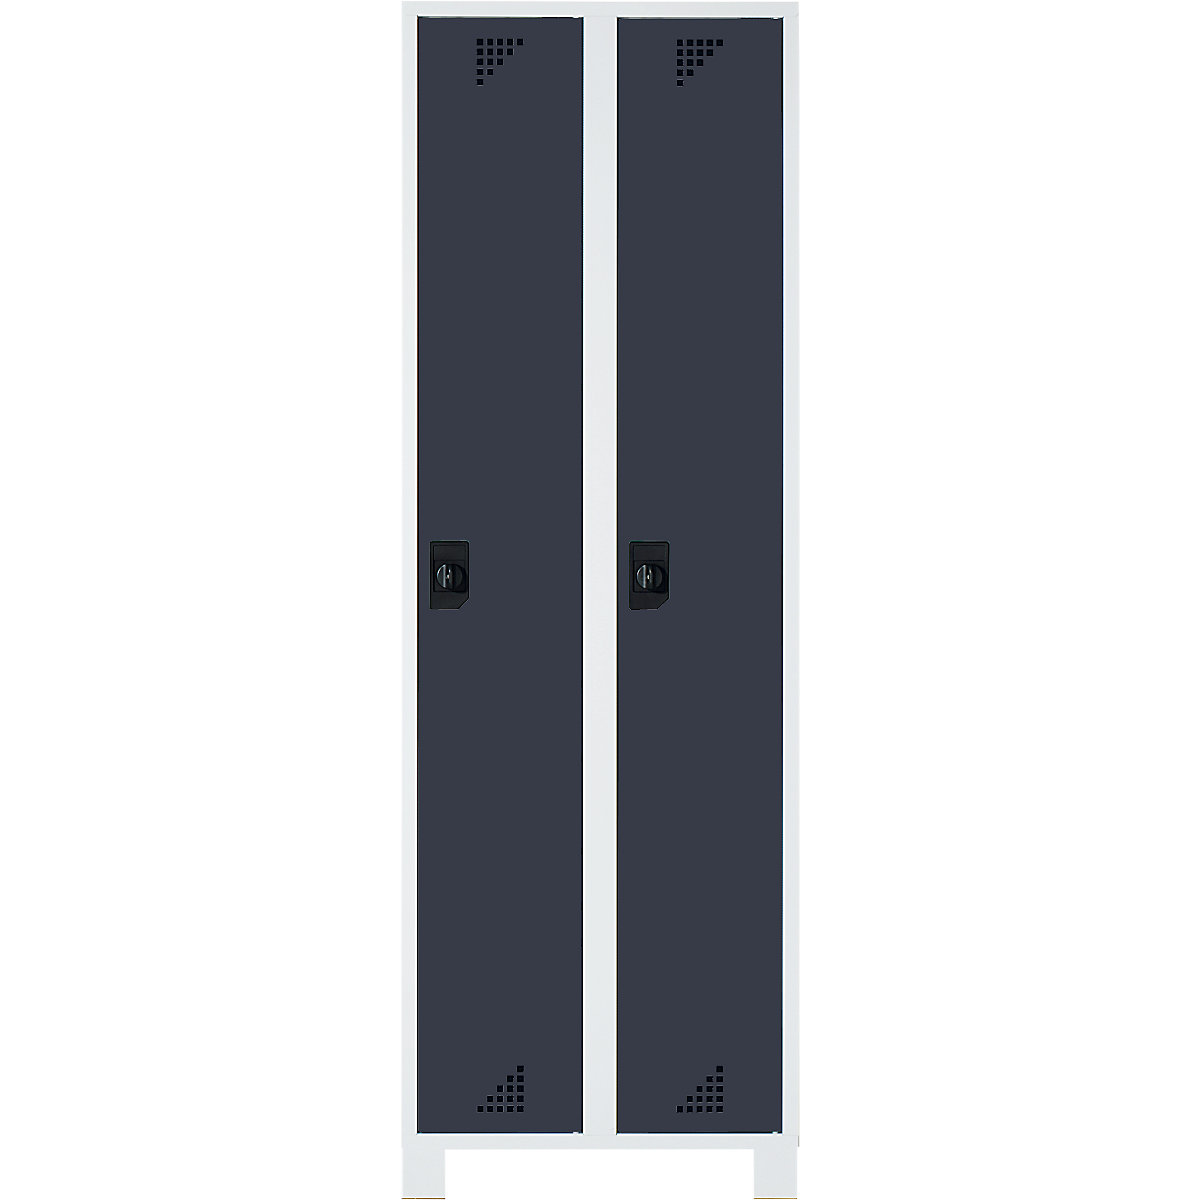 Öltözőszekrény és többfunkciós szekrény – eurokraft pro, fülkemagasság 1695 mm, 2 fülke, szélesség 600 mm, világosszürke váz, antracitszürke ajtók-5